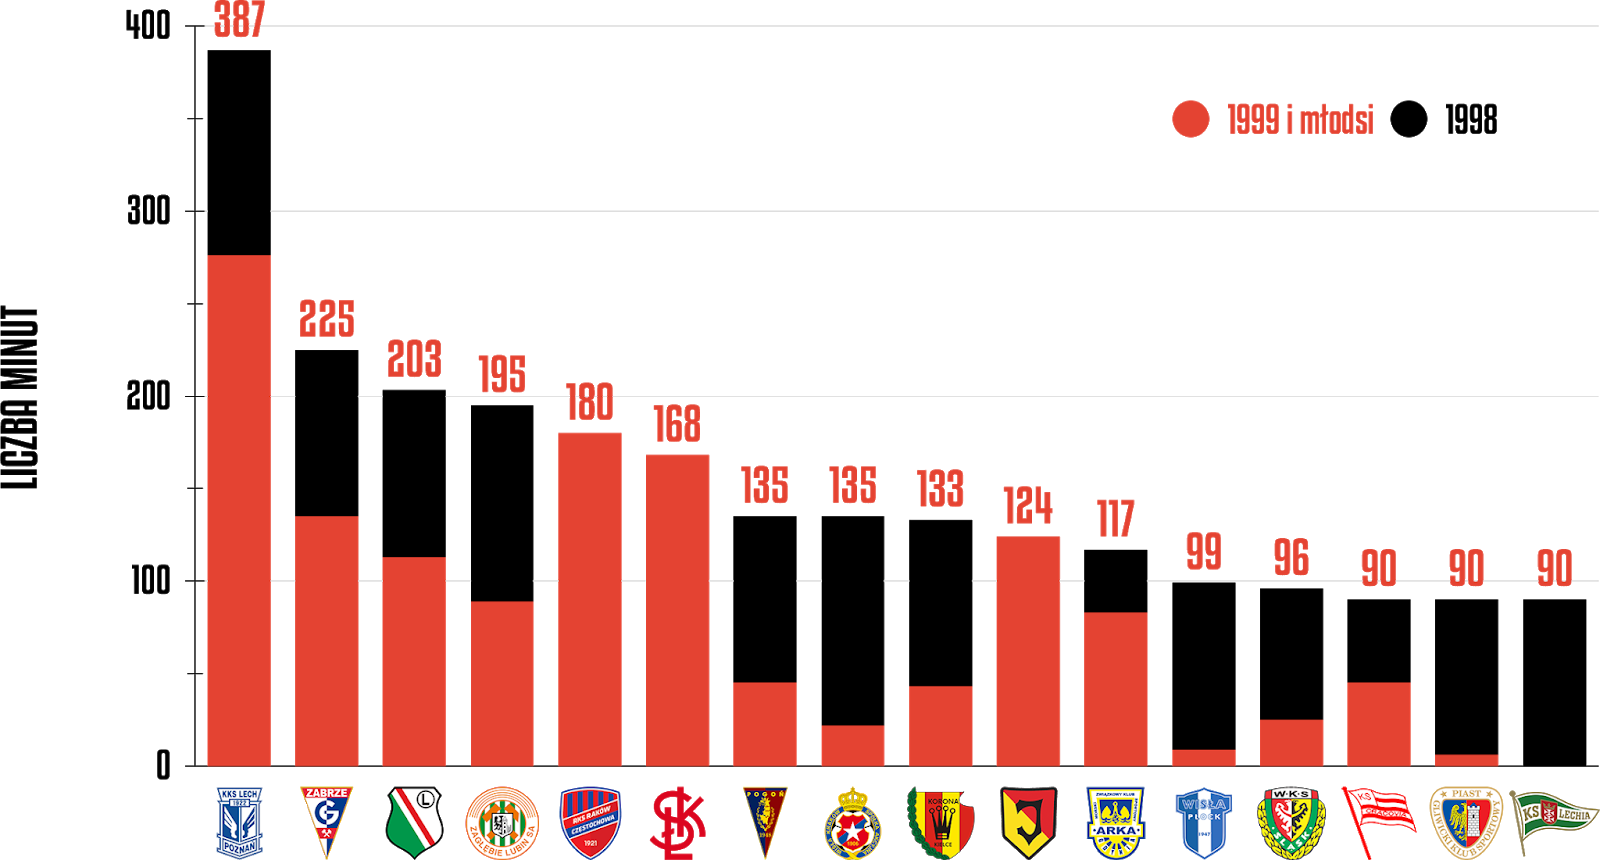 Klasyfikacja klubów pod względem rozegranych minut przez młodzieżowców w 34. kolejce PKO Ekstraklasy<br><br>Źródło: Opracowanie własne na podstawie ekstrastats.pl<br><br>graf. Bartosz Urban